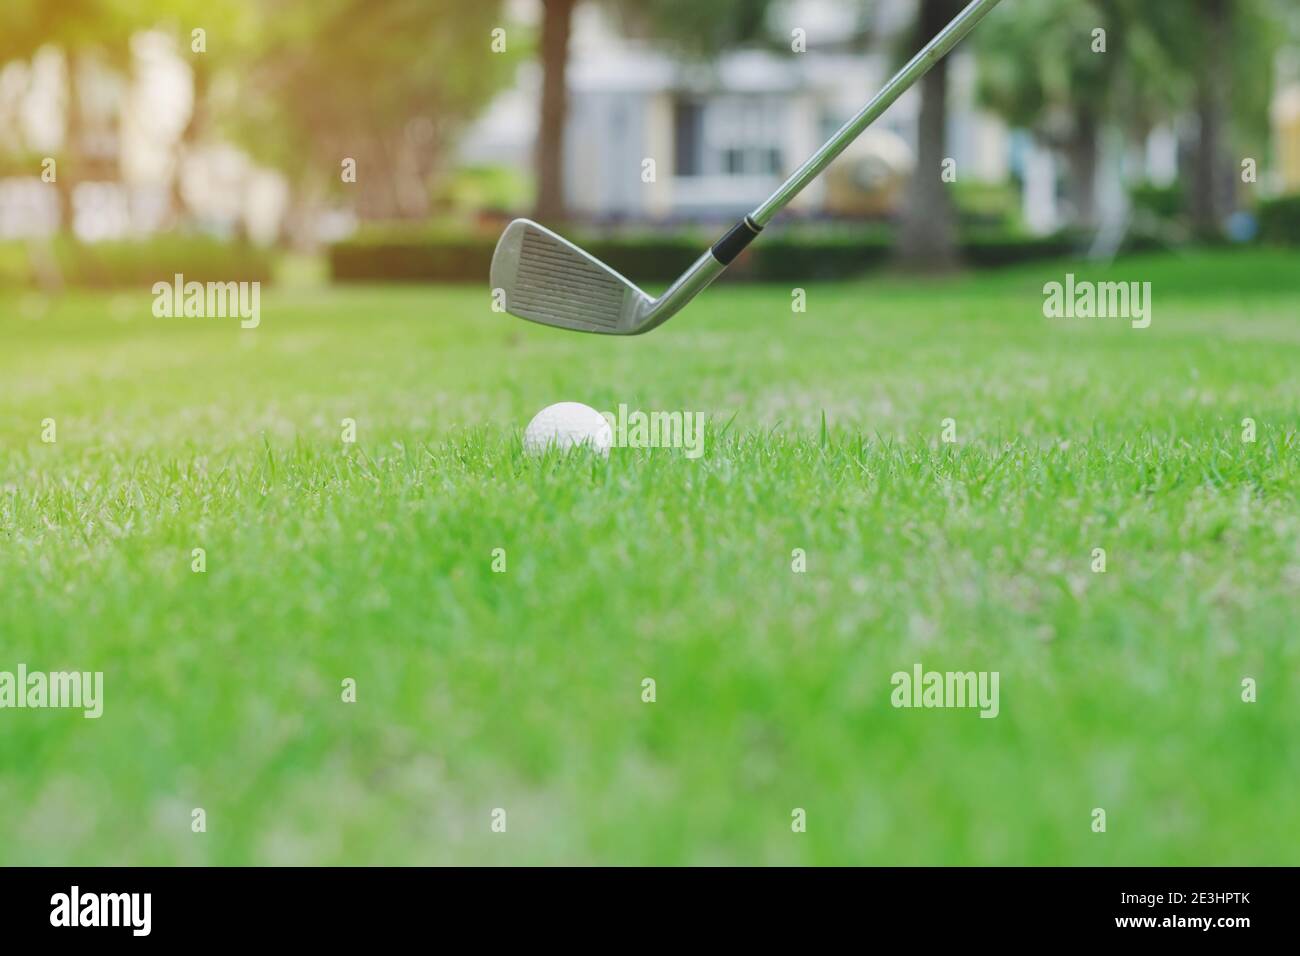 Gros plan sur le terrain de golf avec une balle de golf sur l'herbe verte. Banque D'Images